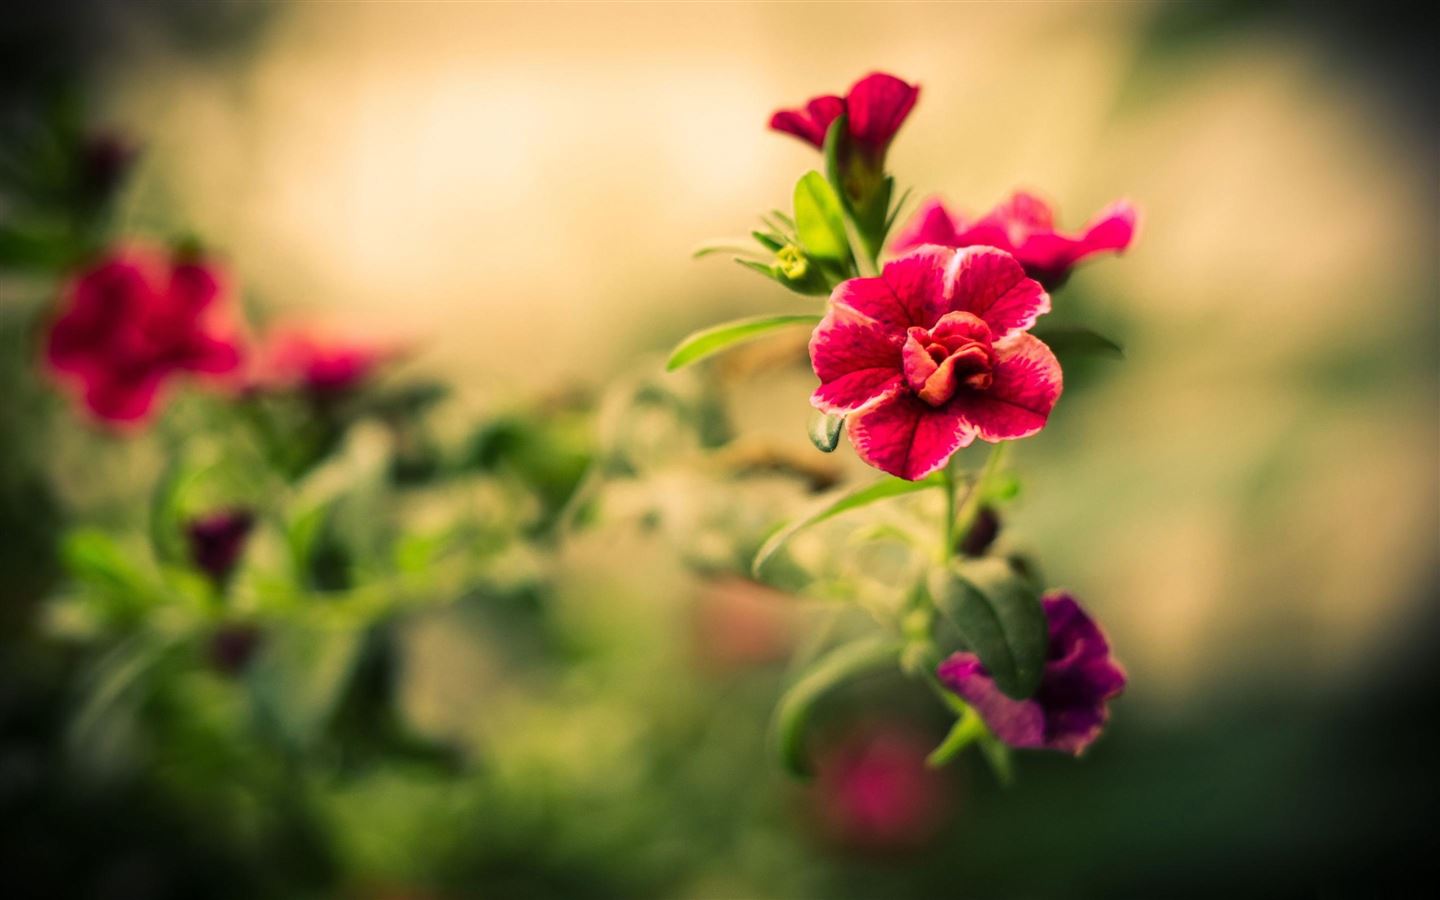 Bạn đang tìm kiếm một hình nền đẹp, nhẹ nhàng và ấn tượng trên MacBook Air của mình? Red Blurry Flower chắc chắn là điều bạn cần. Liên kết sẽ đưa bạn đến những hình ảnh đẹp nhất của loài hoa này, hãy trang trí cho thiết bị của bạn thêm sinh động và thú vị.